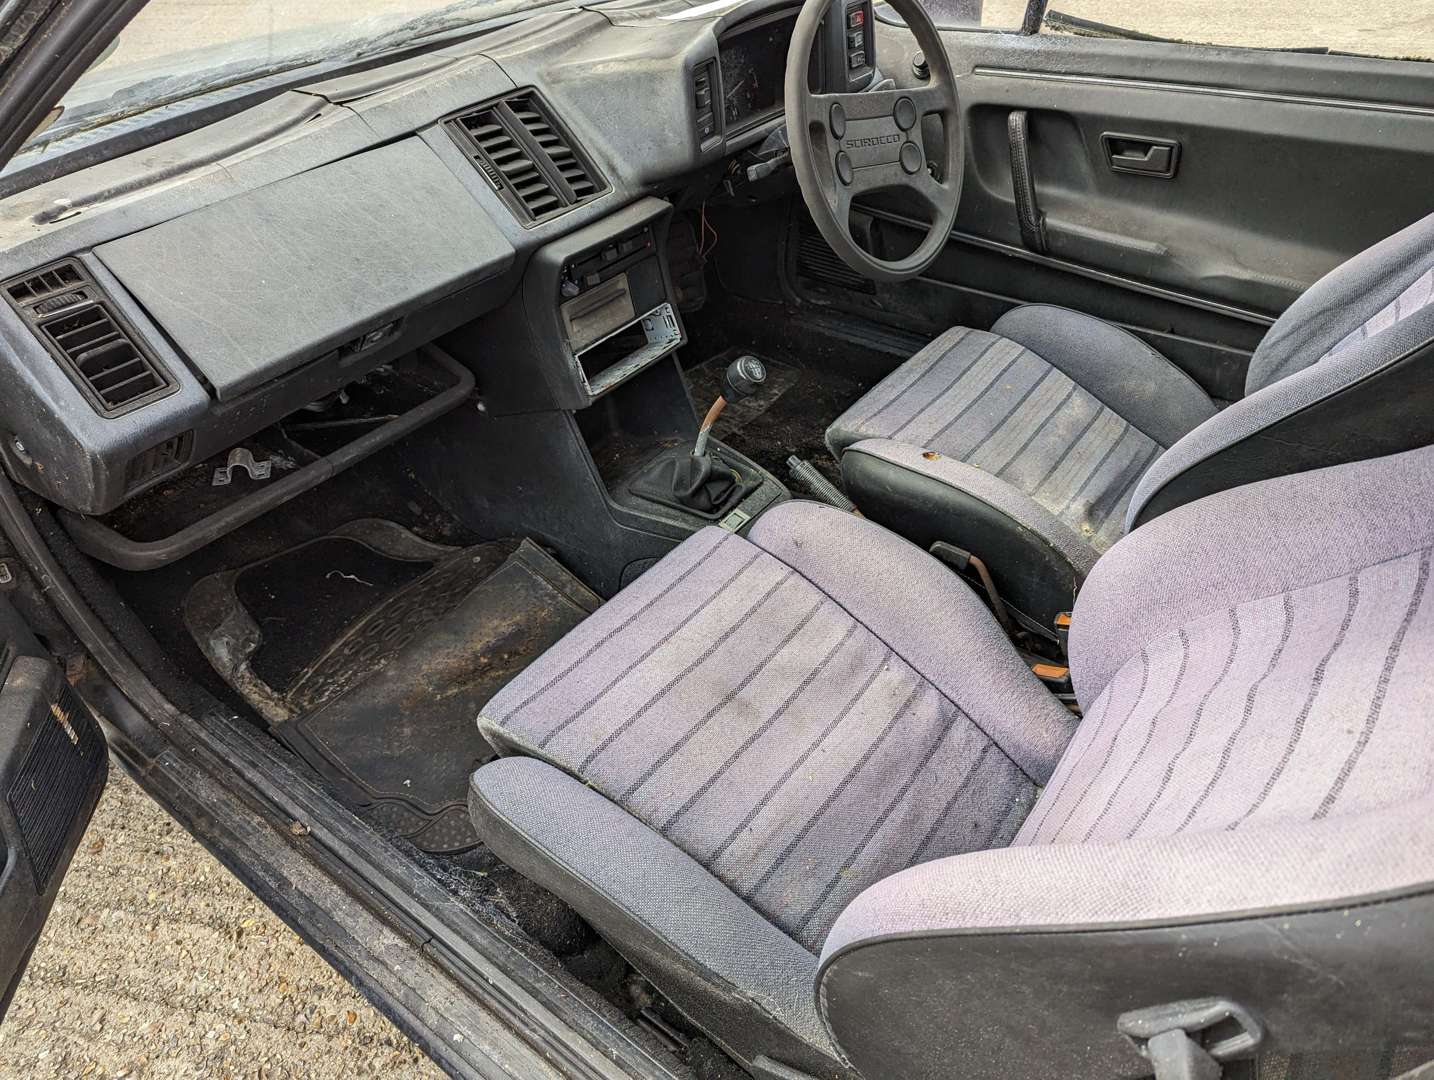 <p>1984 VW SCIROCCO 1.8 GTI</p>